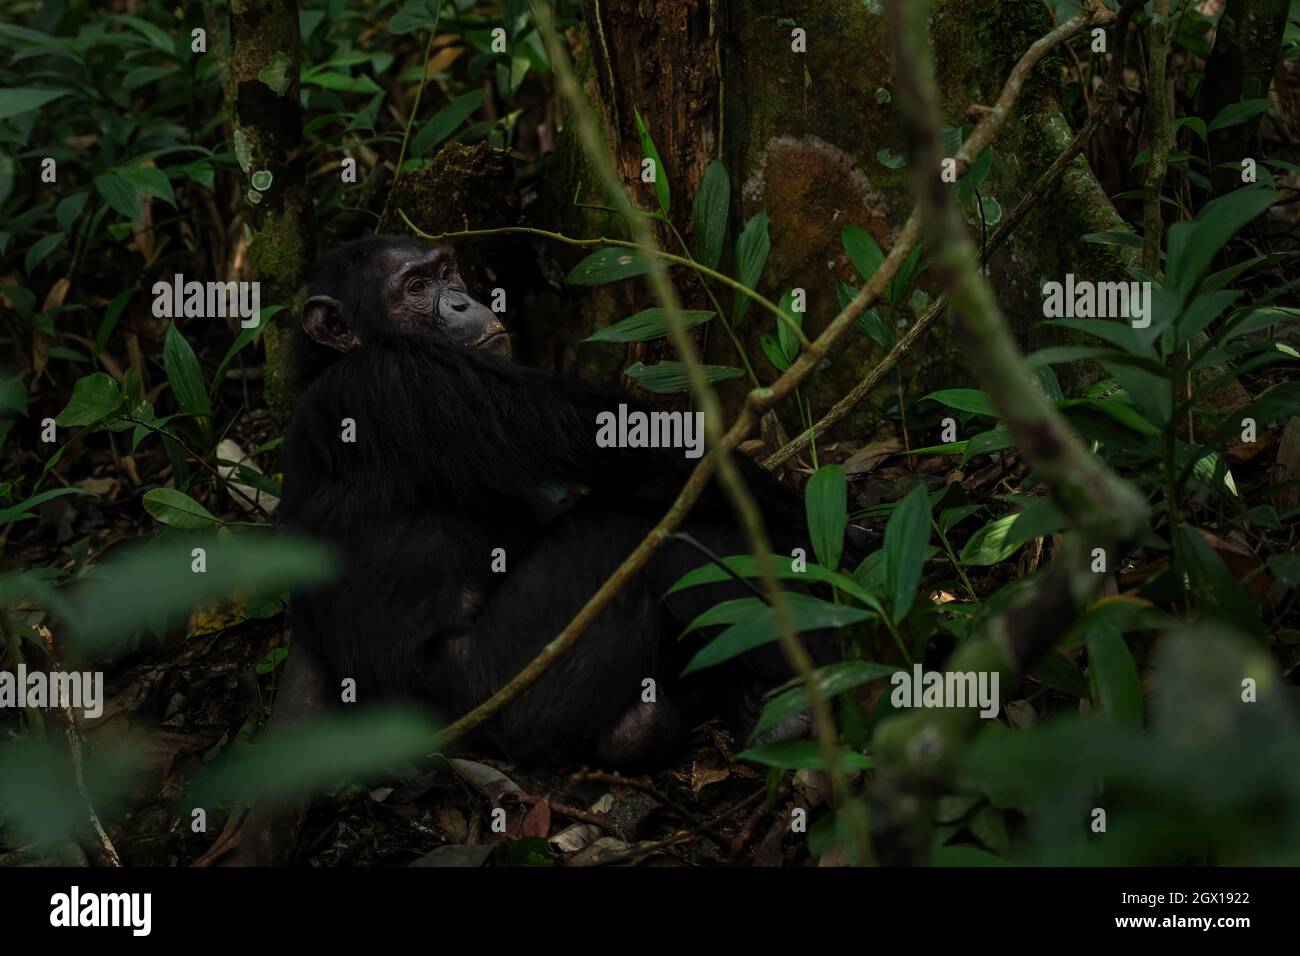 Chimpanzee commun - Pan troglodytes, grand singe populaire des forêts et des terres boisées africaines, forêt de Kibale, Ouganda. Banque D'Images